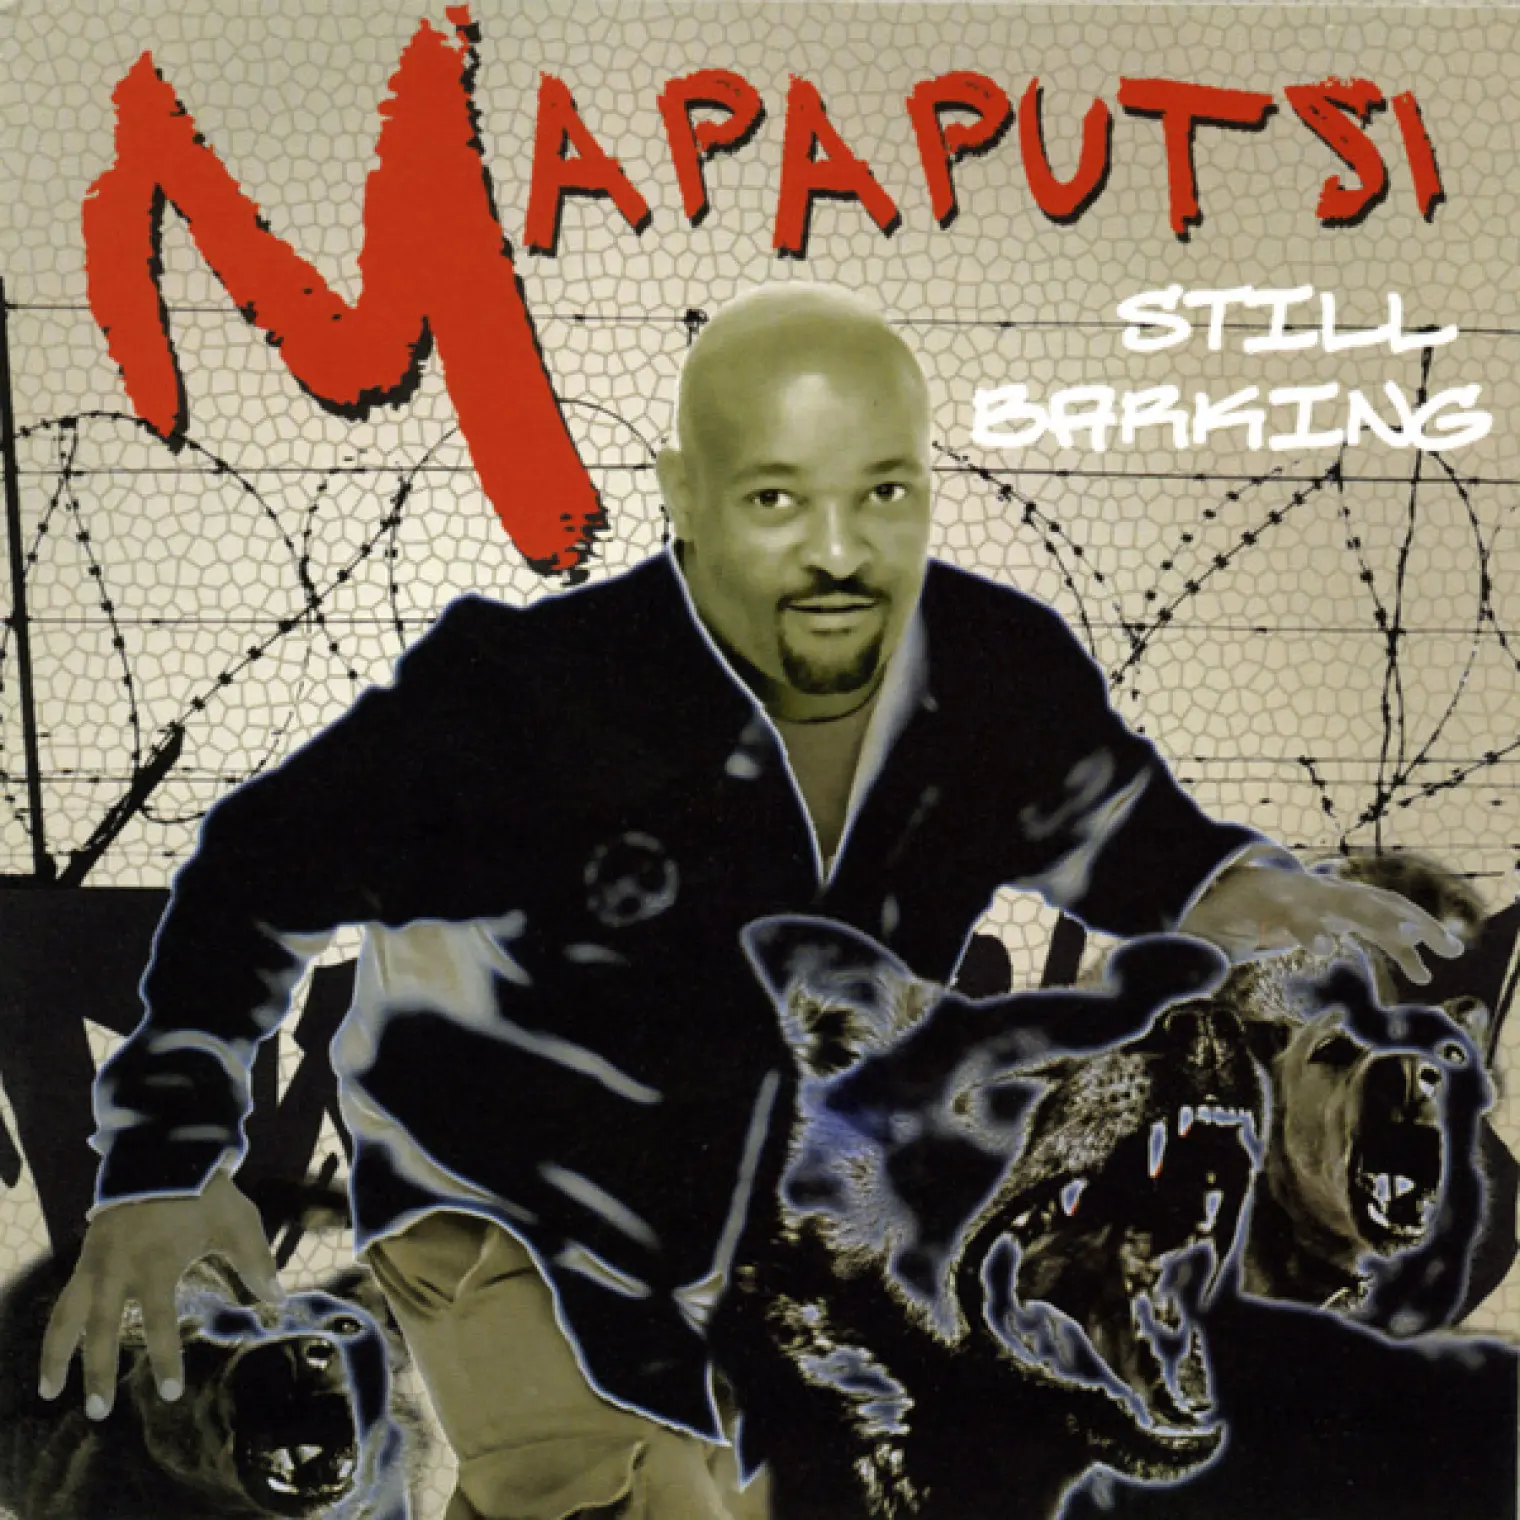 Still Barking -  Mapaputsi 